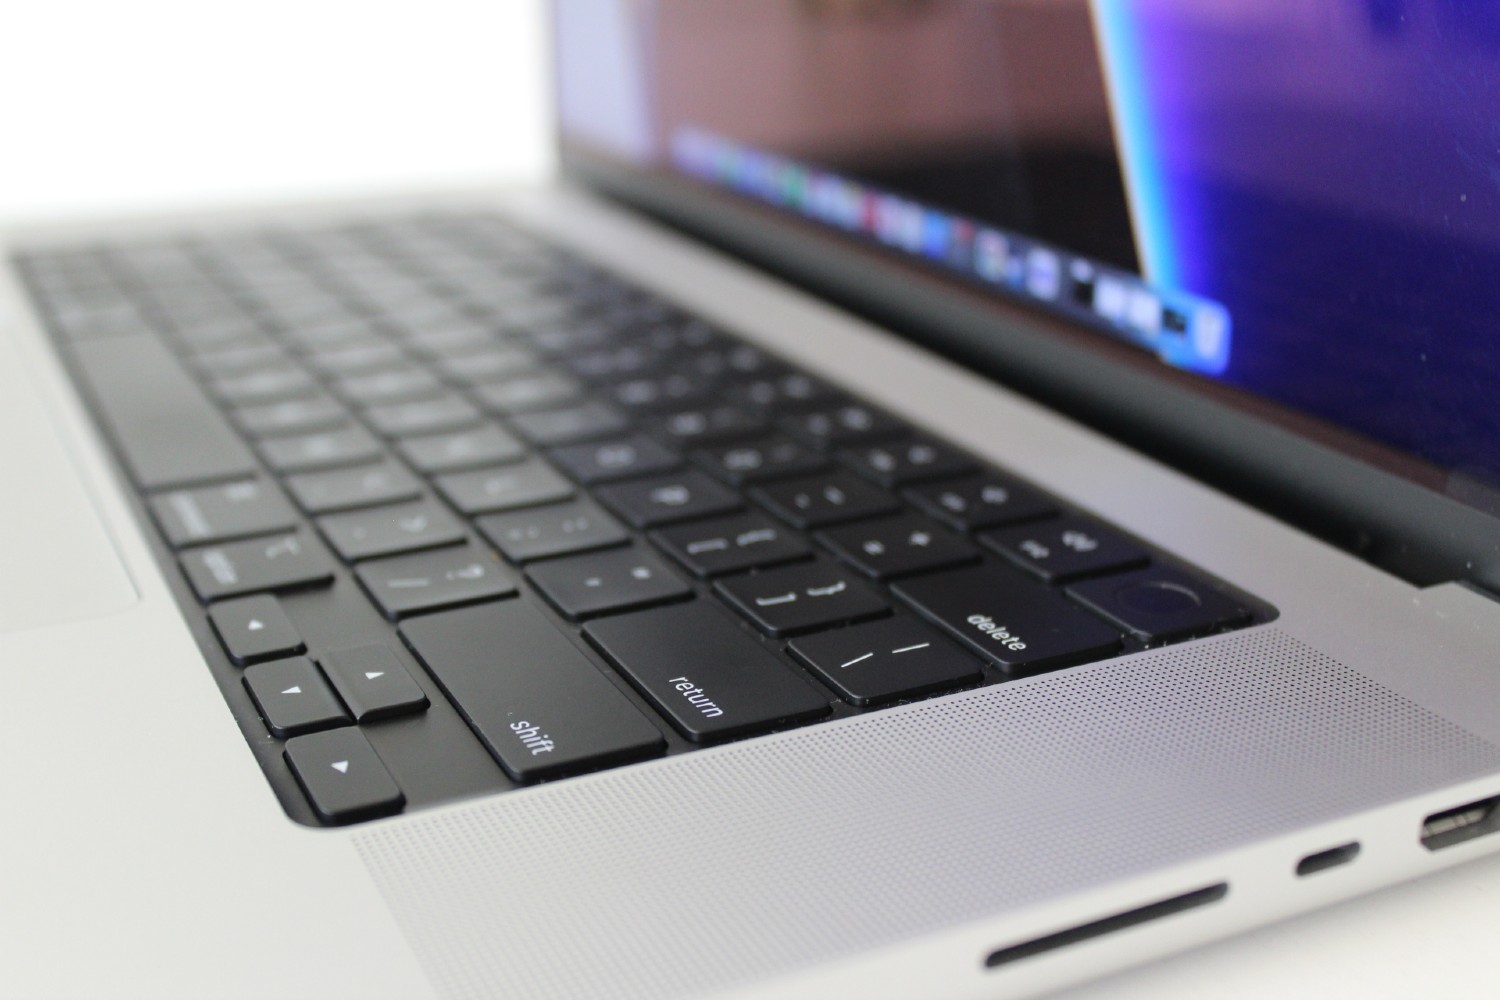 Vista lateral do Apple MacBook Pro mostrando o teclado e as portas.